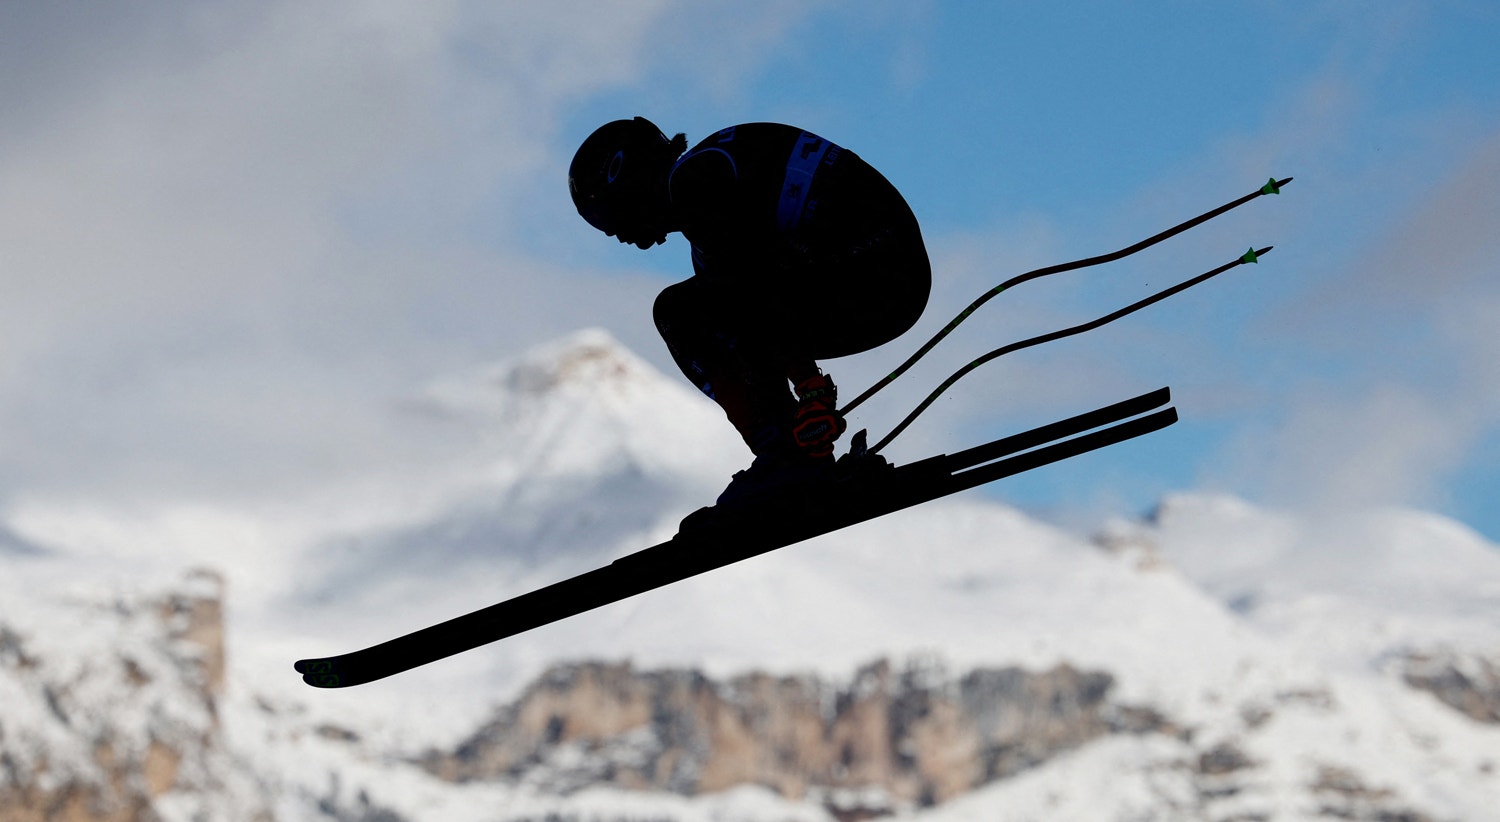  Campeonato do Mundo de Esqui Alpino FIS - Downhill Masculino - Val Gardena, It&aacute;lia - 14 de dezembro | Claudia Greco - Reuters 